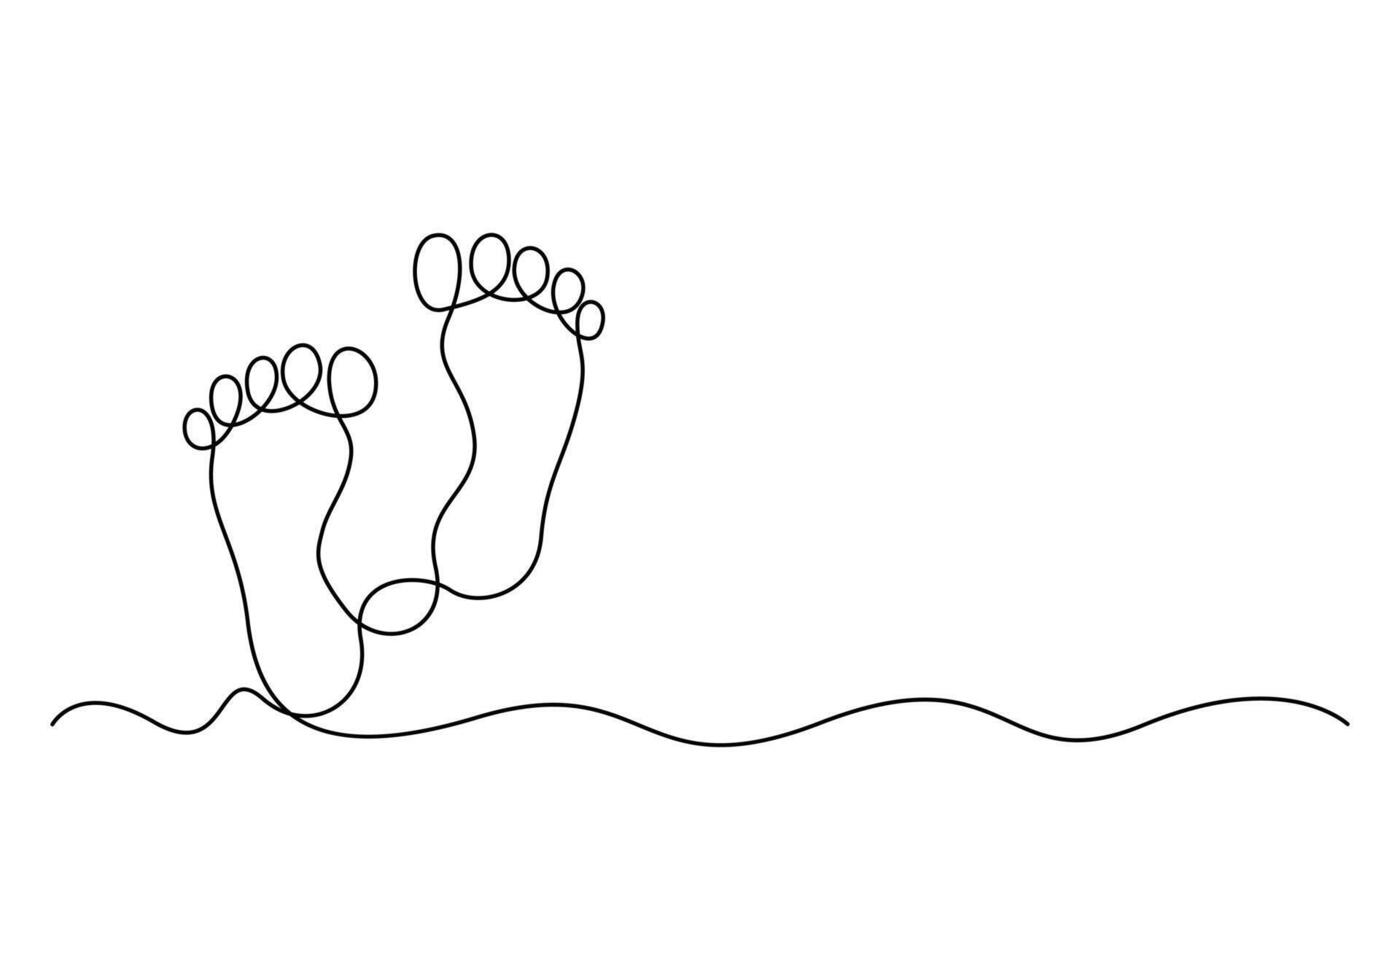 kaal voet doorlopend een lijn tekening van concept tekening stijl digitaal illustratie vector